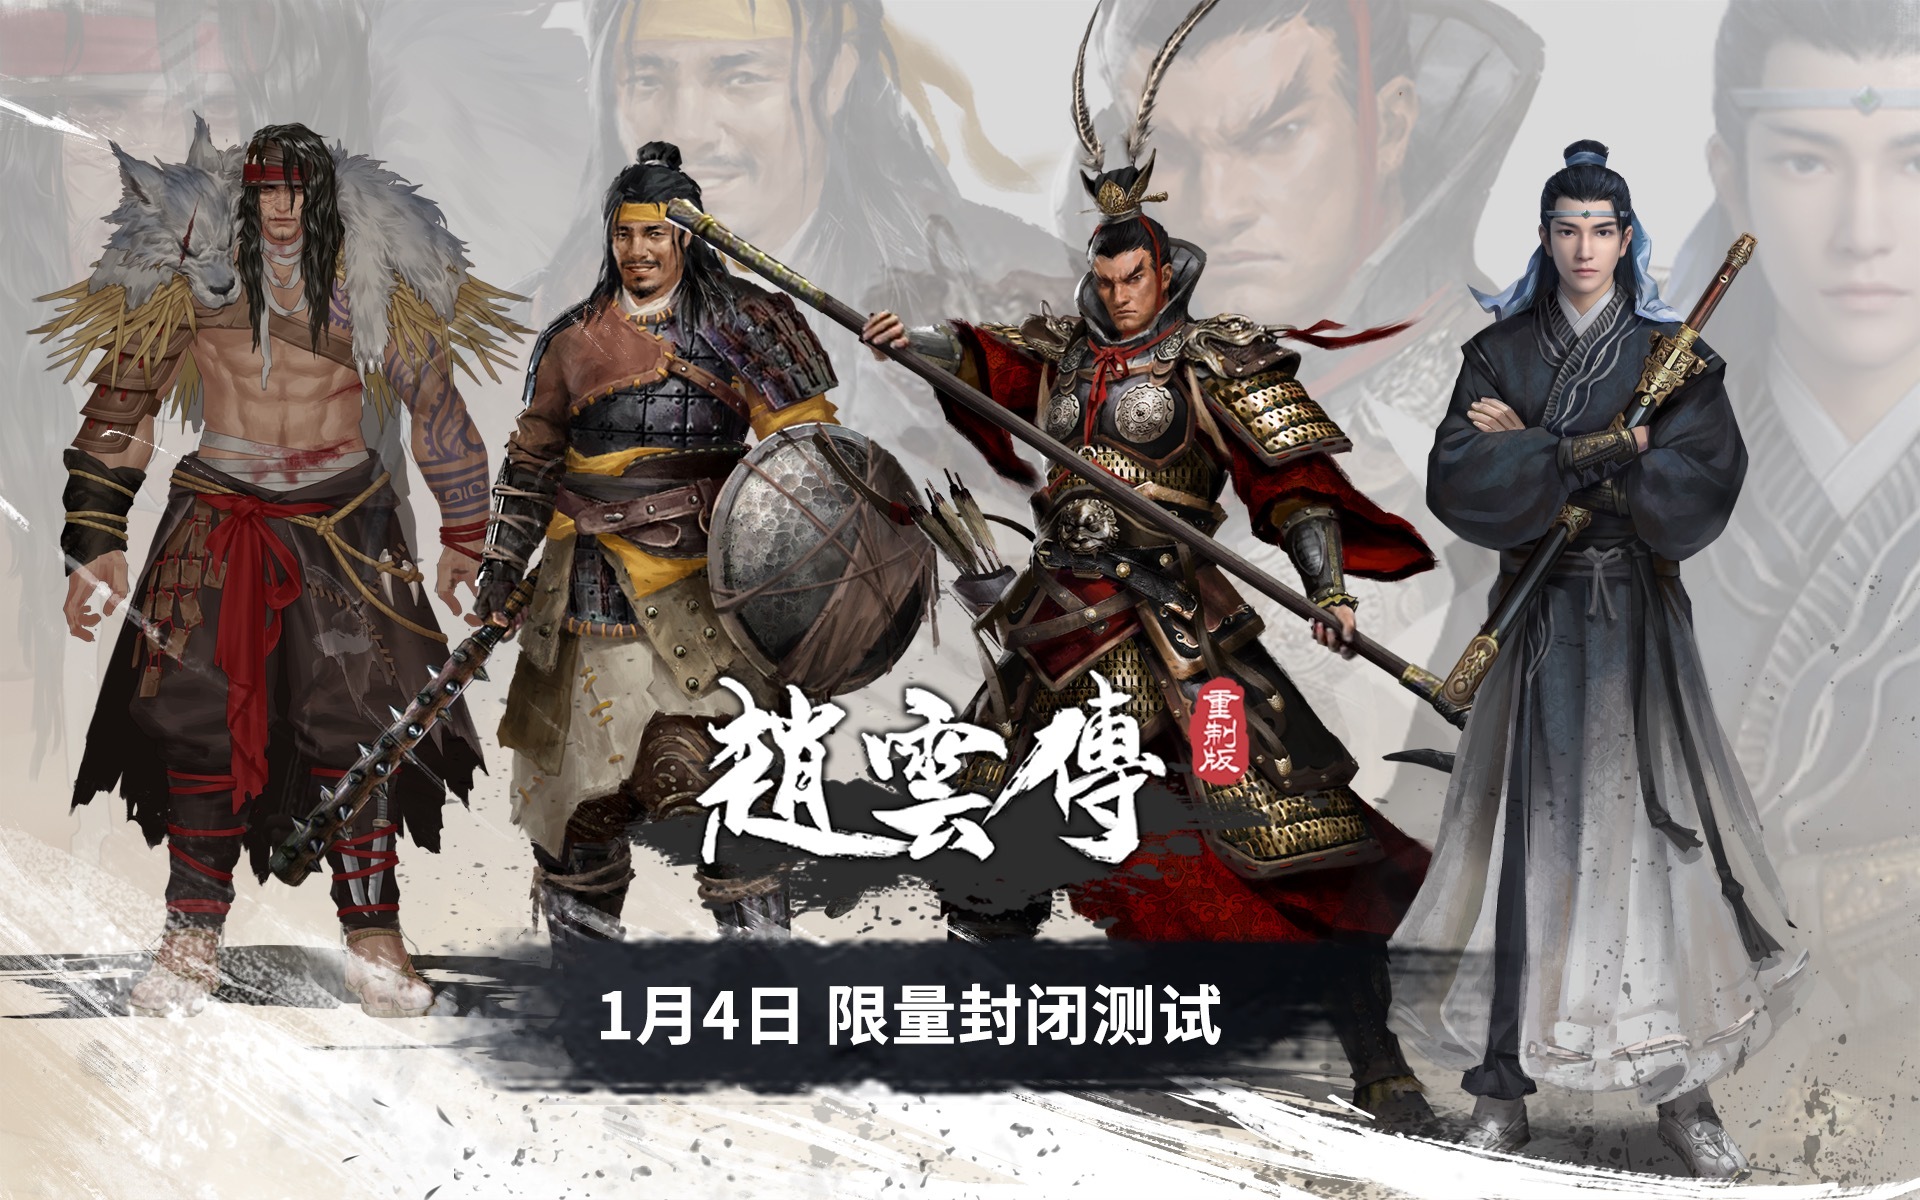 《赵云传重制版》预定明年 1 月展开首次封测 释出吕布等四位角色立绘设定插图